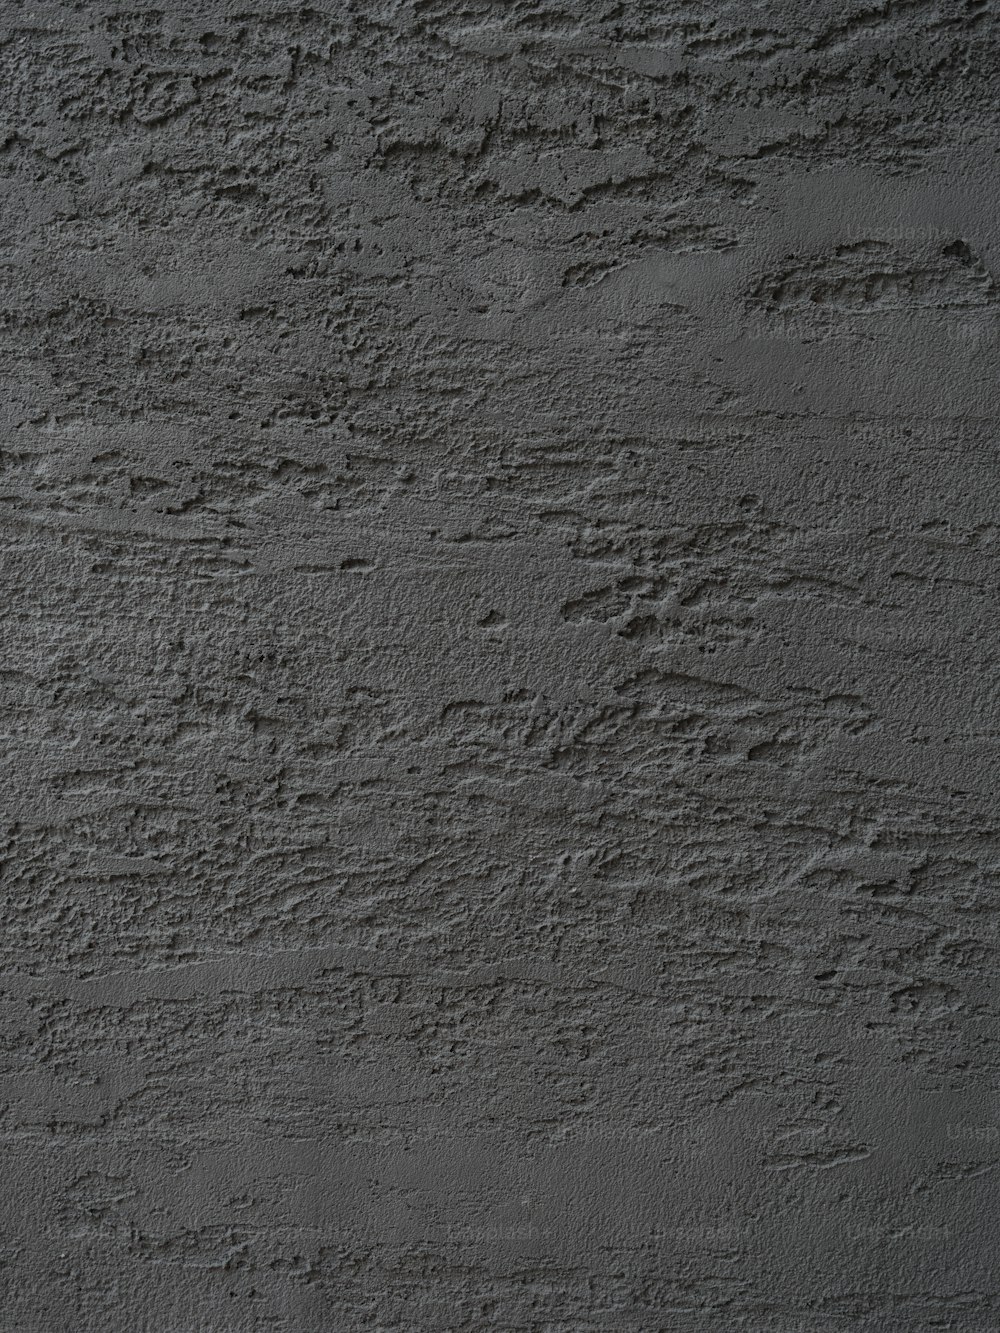 uma foto em preto e branco de uma parede de concreto